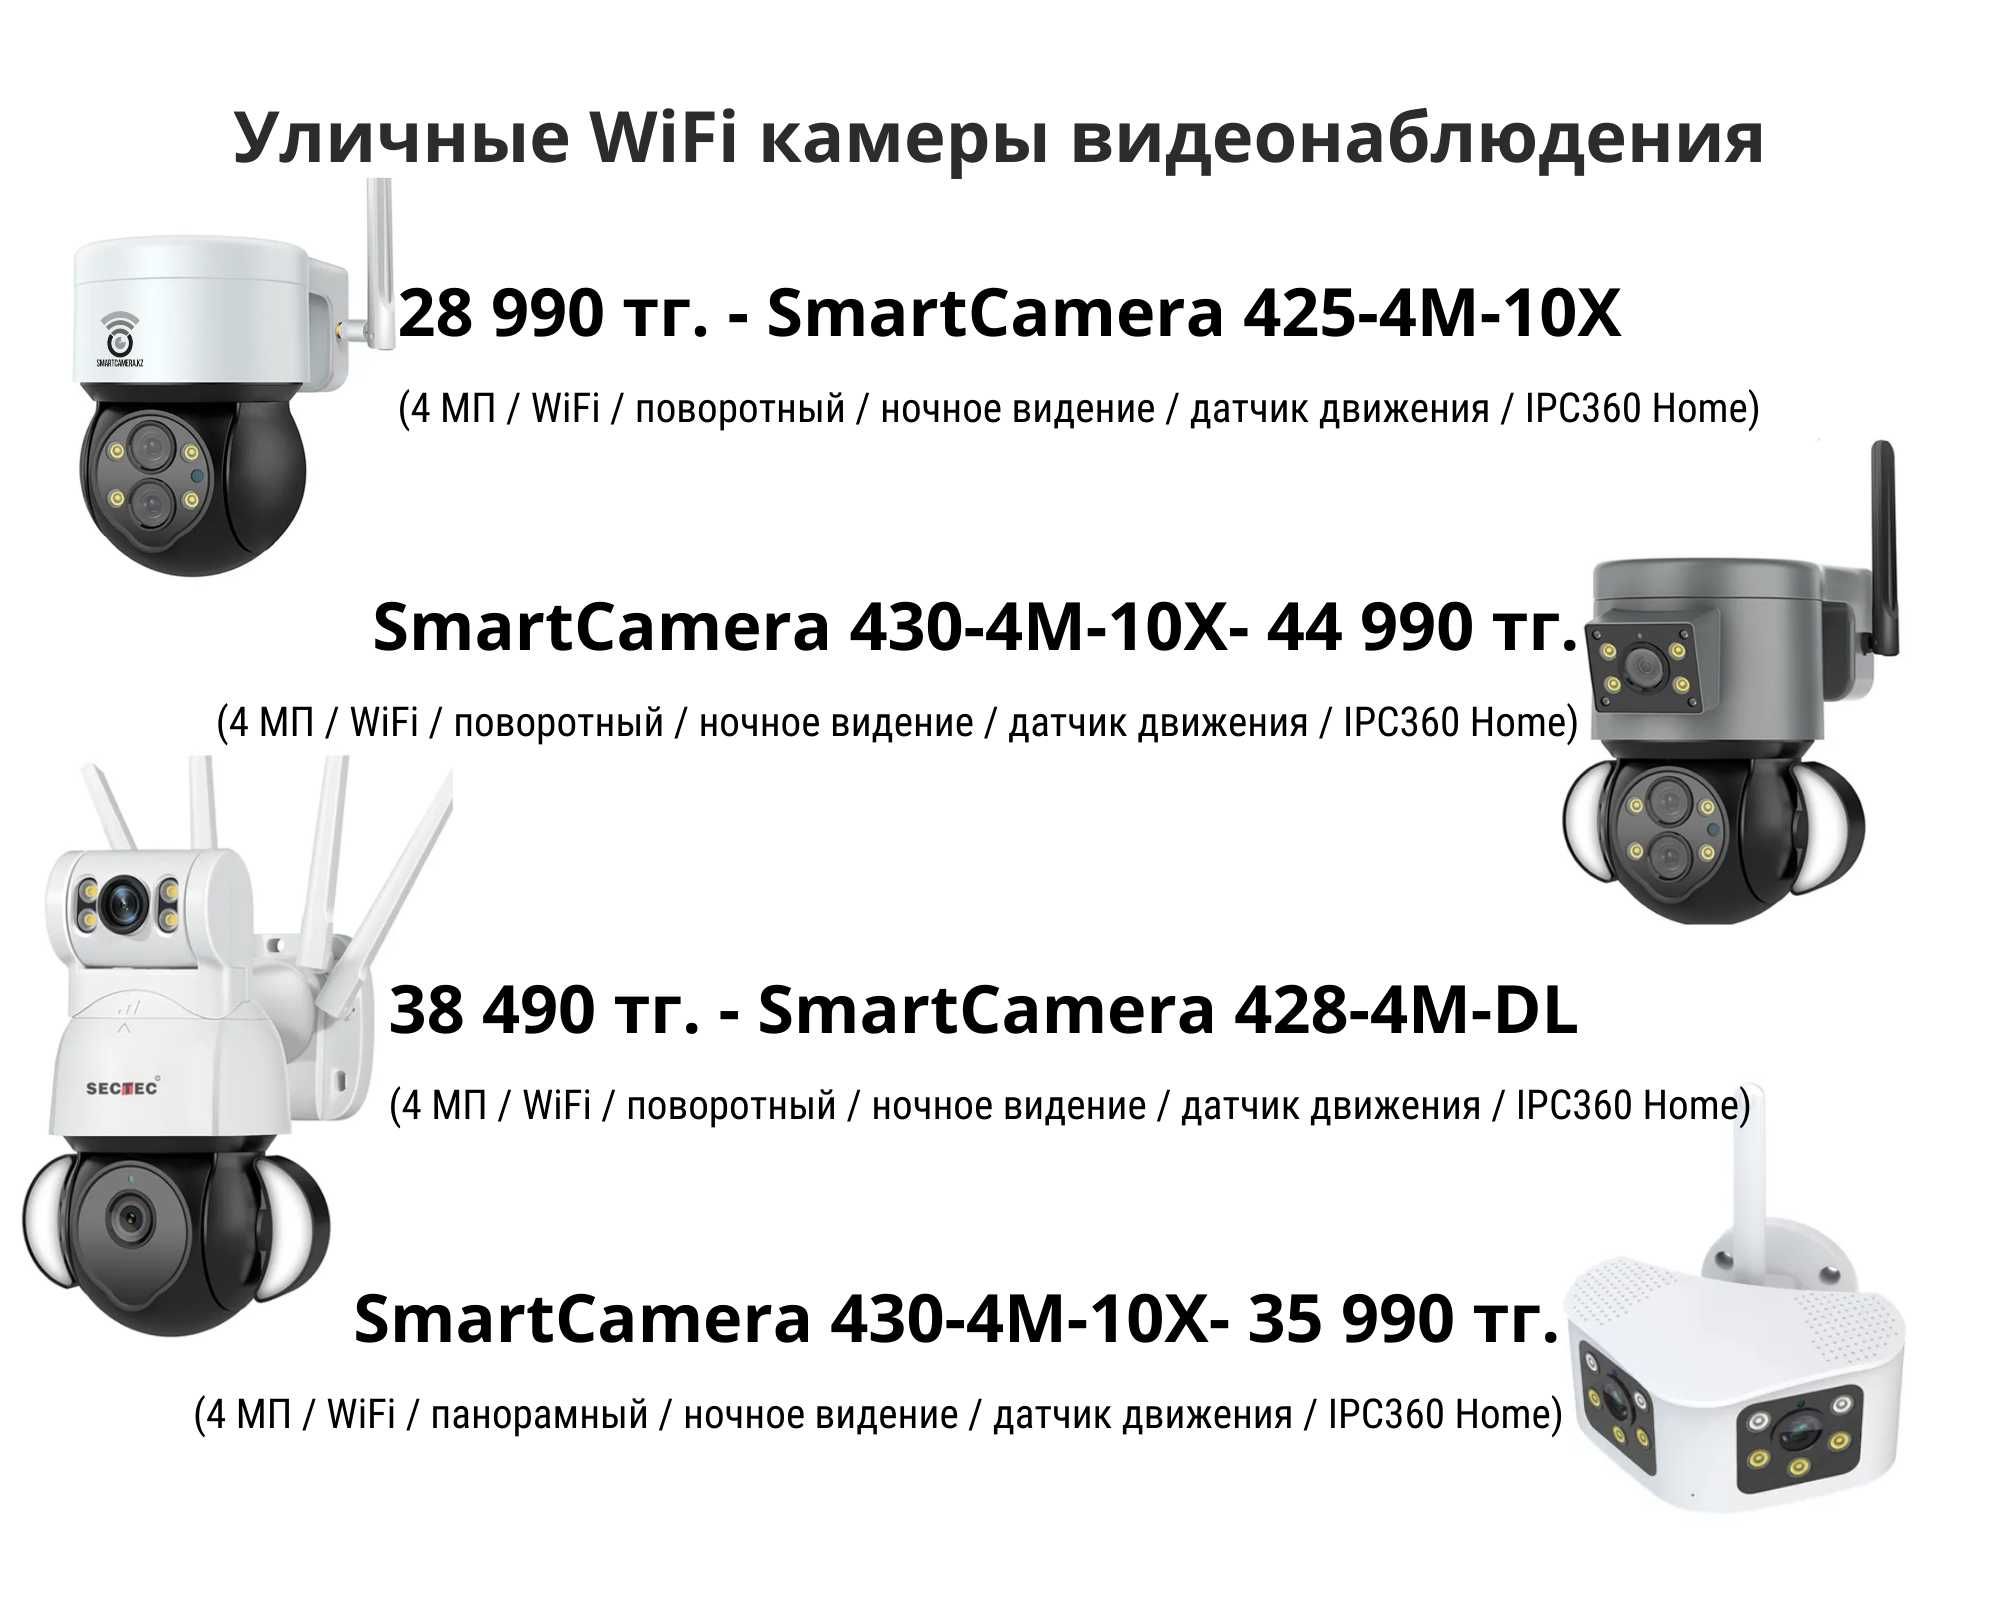 WiFi и 4G камеры видеонаблюдения для круглосуточно видео фиксаций